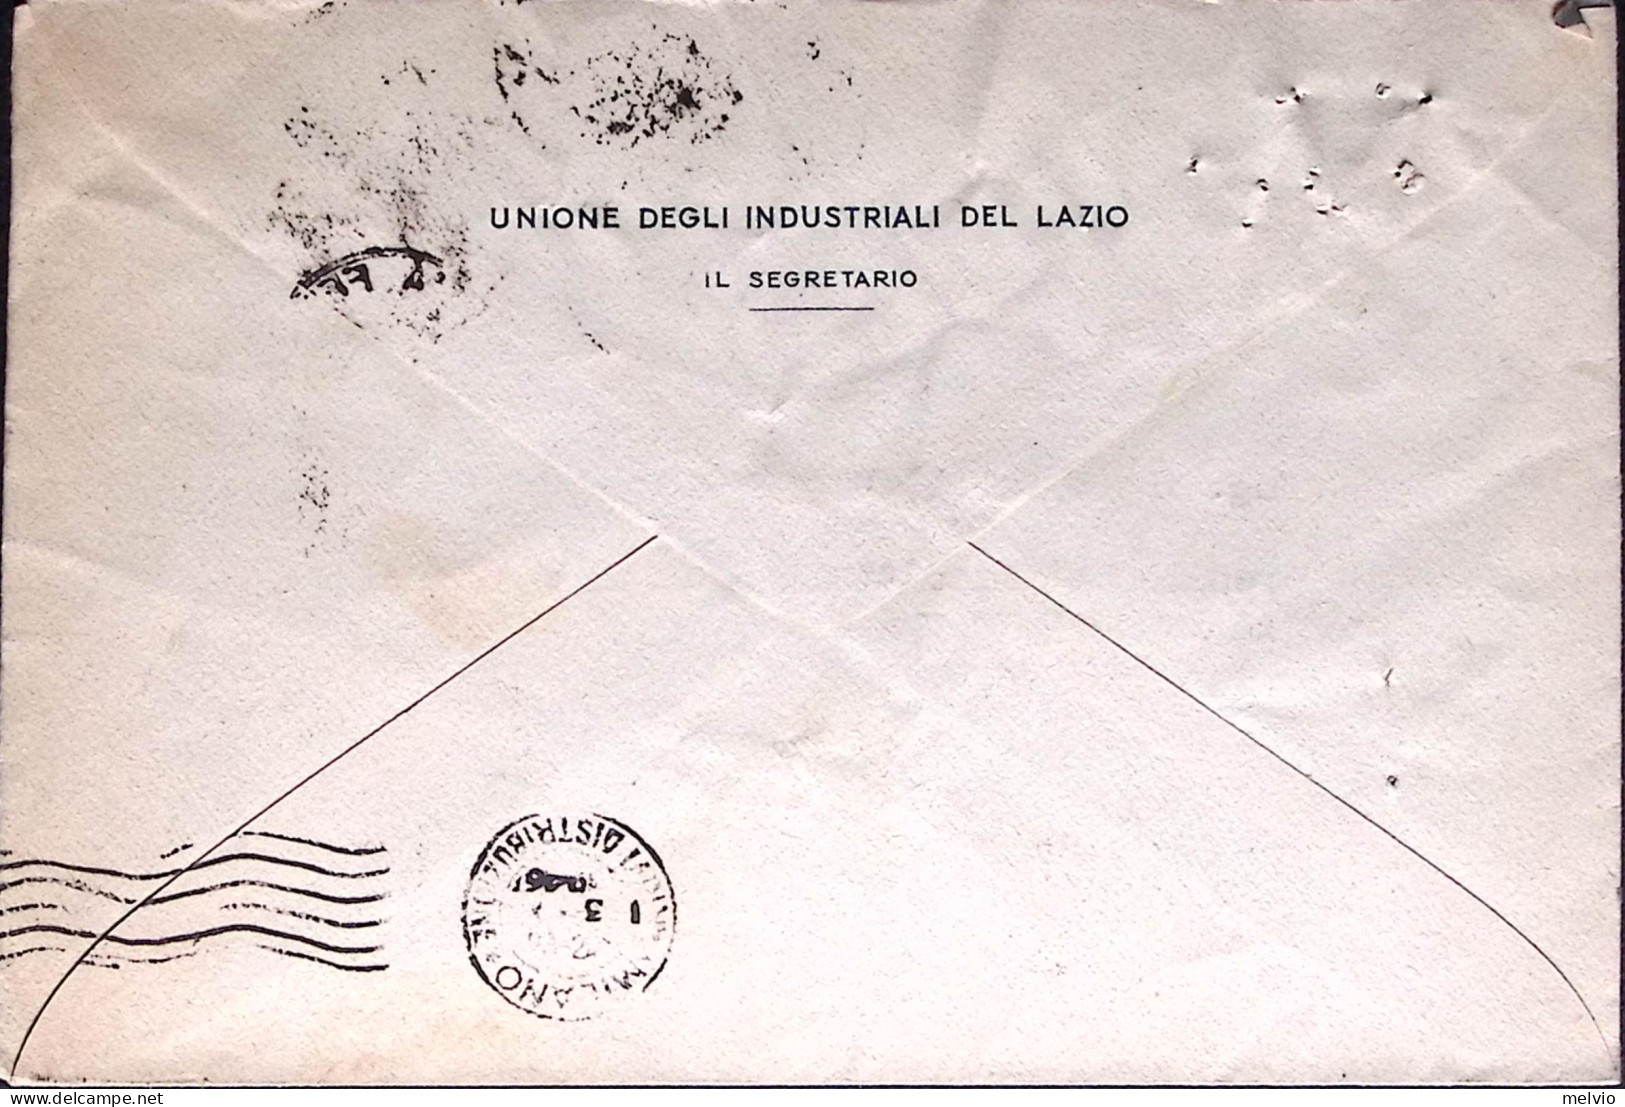 1946-REPUBBLICHE MEDIEVALI Lire 4 Isolato Su Busta Roma (2.11) Fori Spillo - 1946-60: Marcophilie